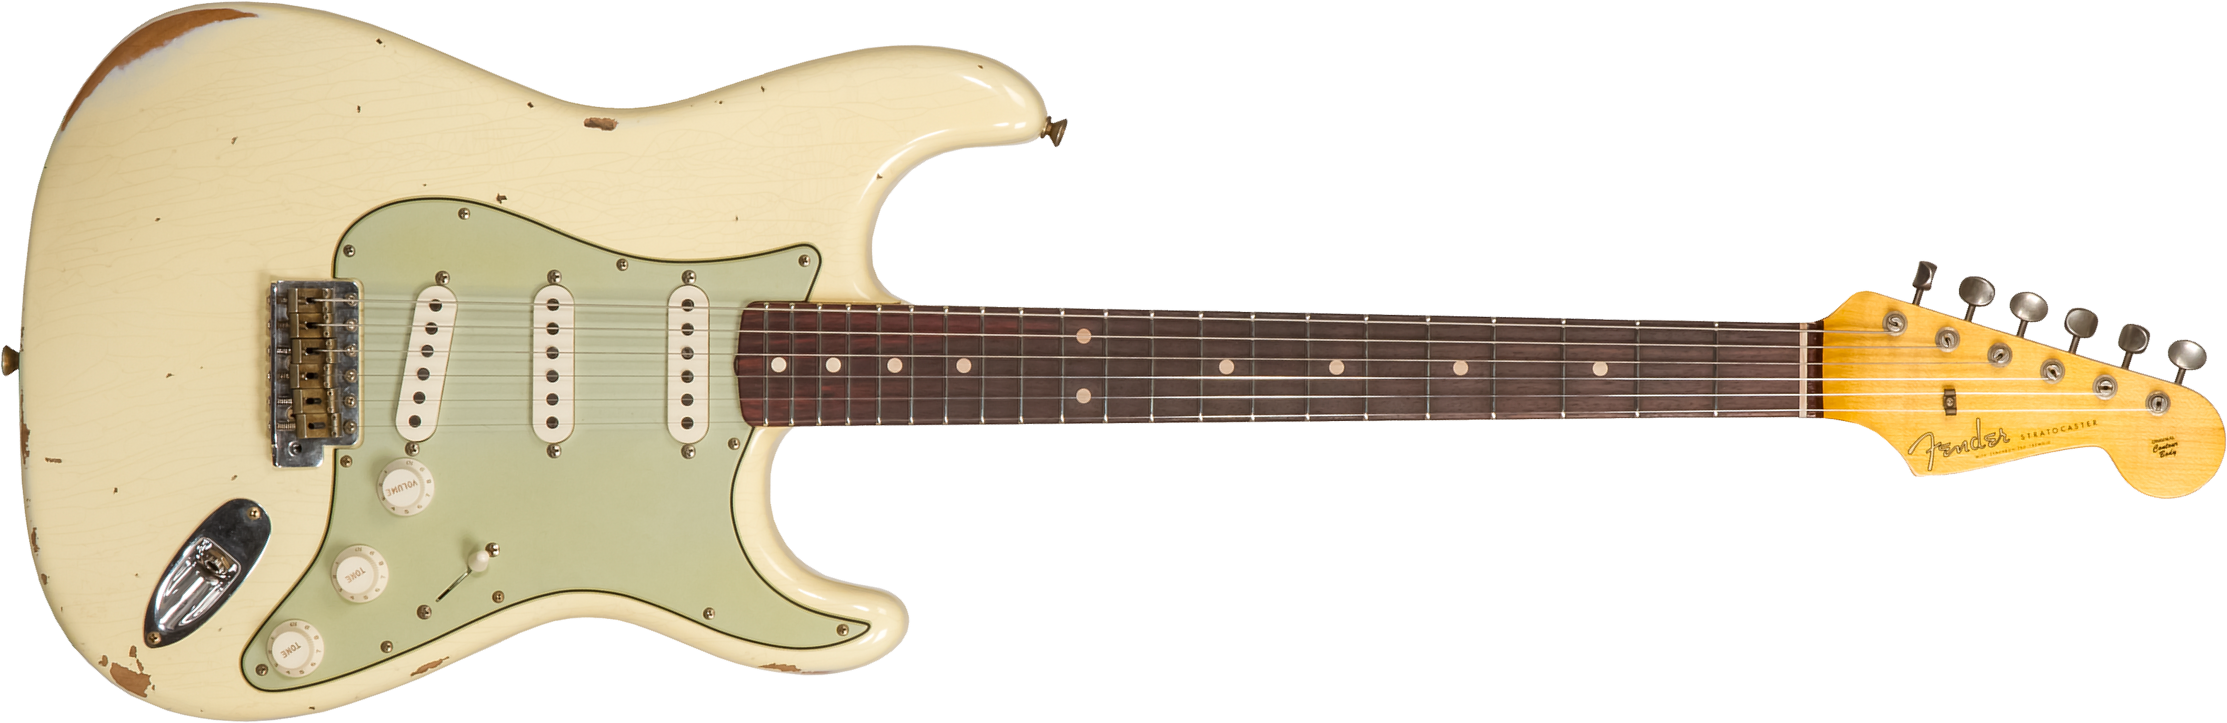 Fender Custom Shop Strat 1959 3s Trem Rw #r117393 - Relic Aged Vintage White - Guitare Électrique Forme Str - Main picture